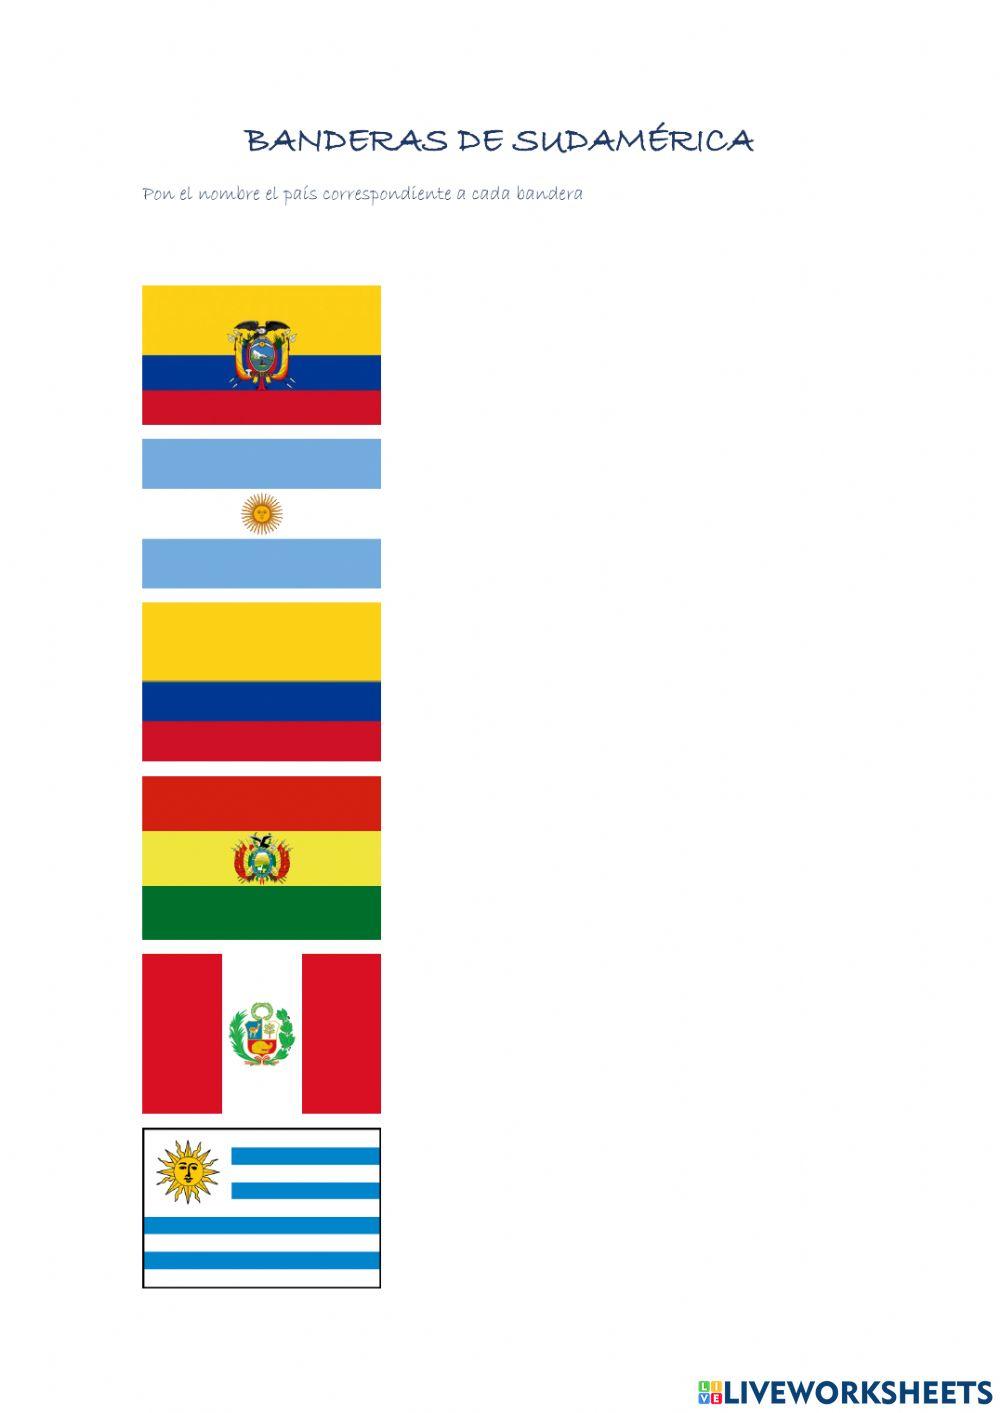 Banderas de Sudamérica